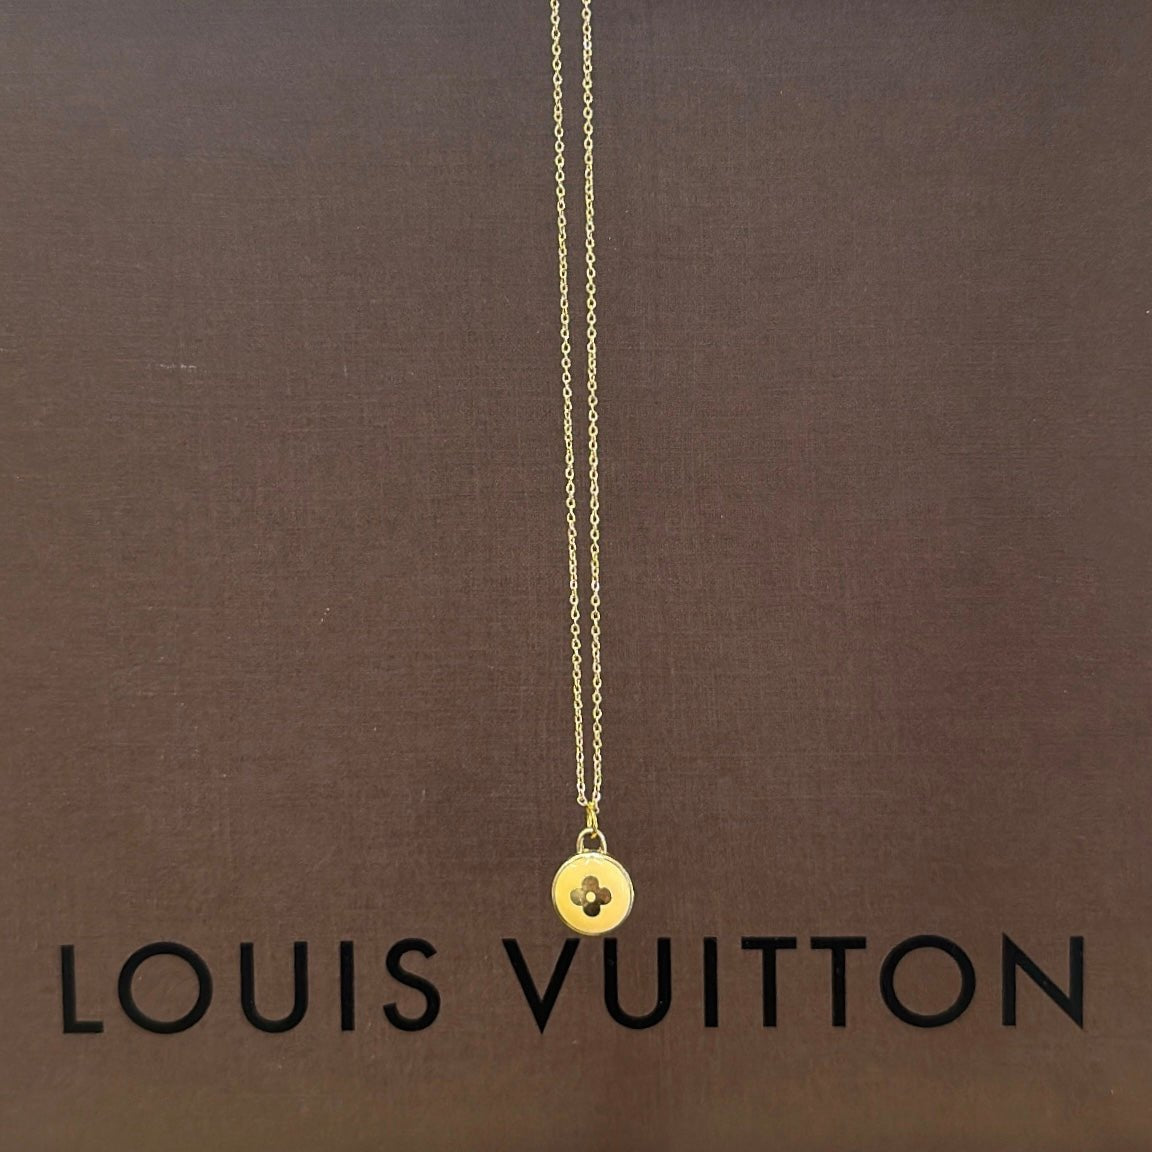 LOUIS VUITTON Clover Charm Necklaces - Bag Envy